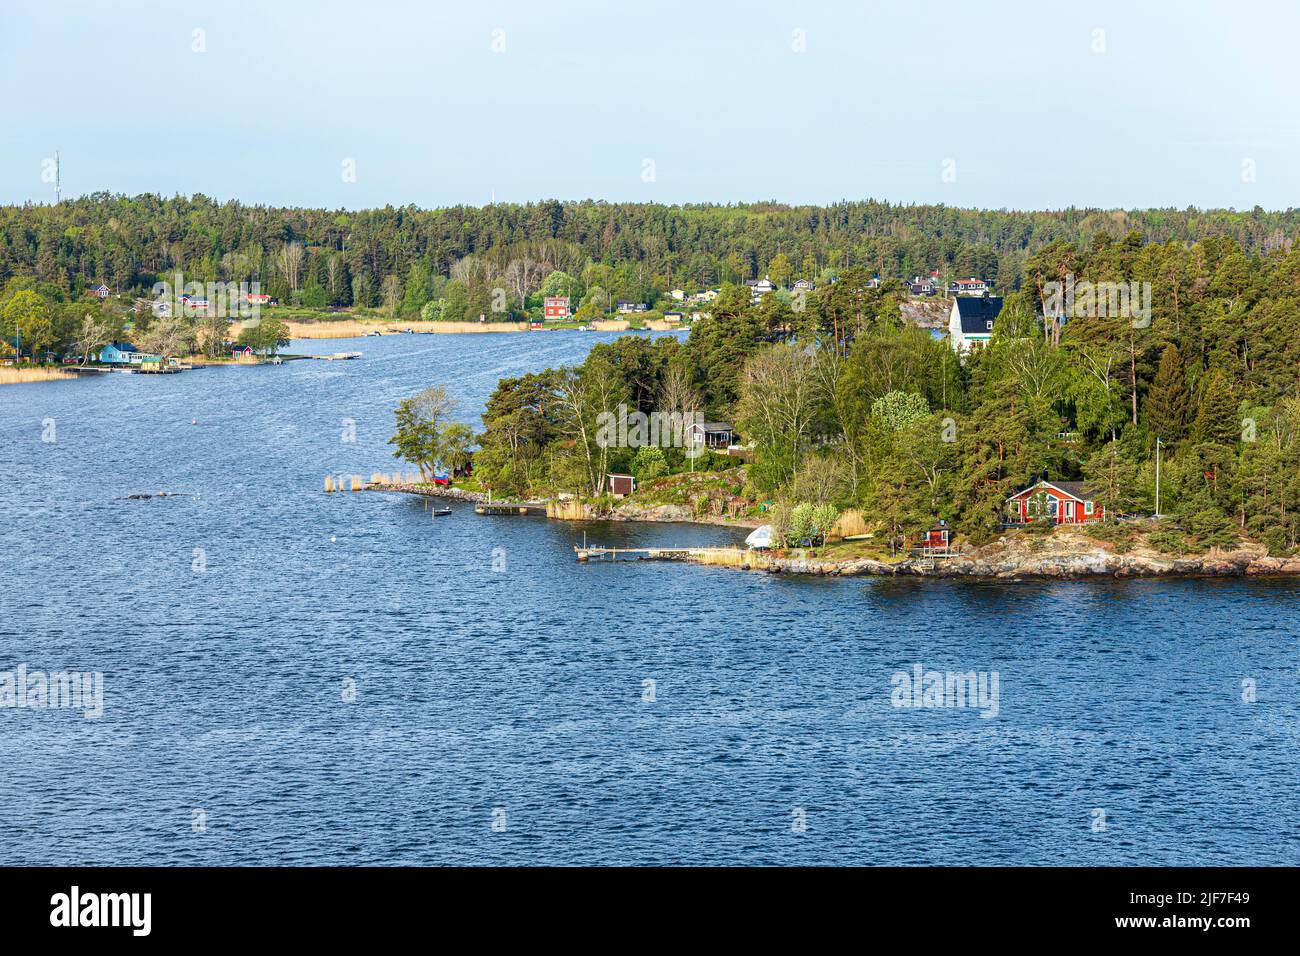 Temprano por la mañana en una de las muchas islas del archipiélago de Estocolmo - esta Rindo, Suecia Foto de stock